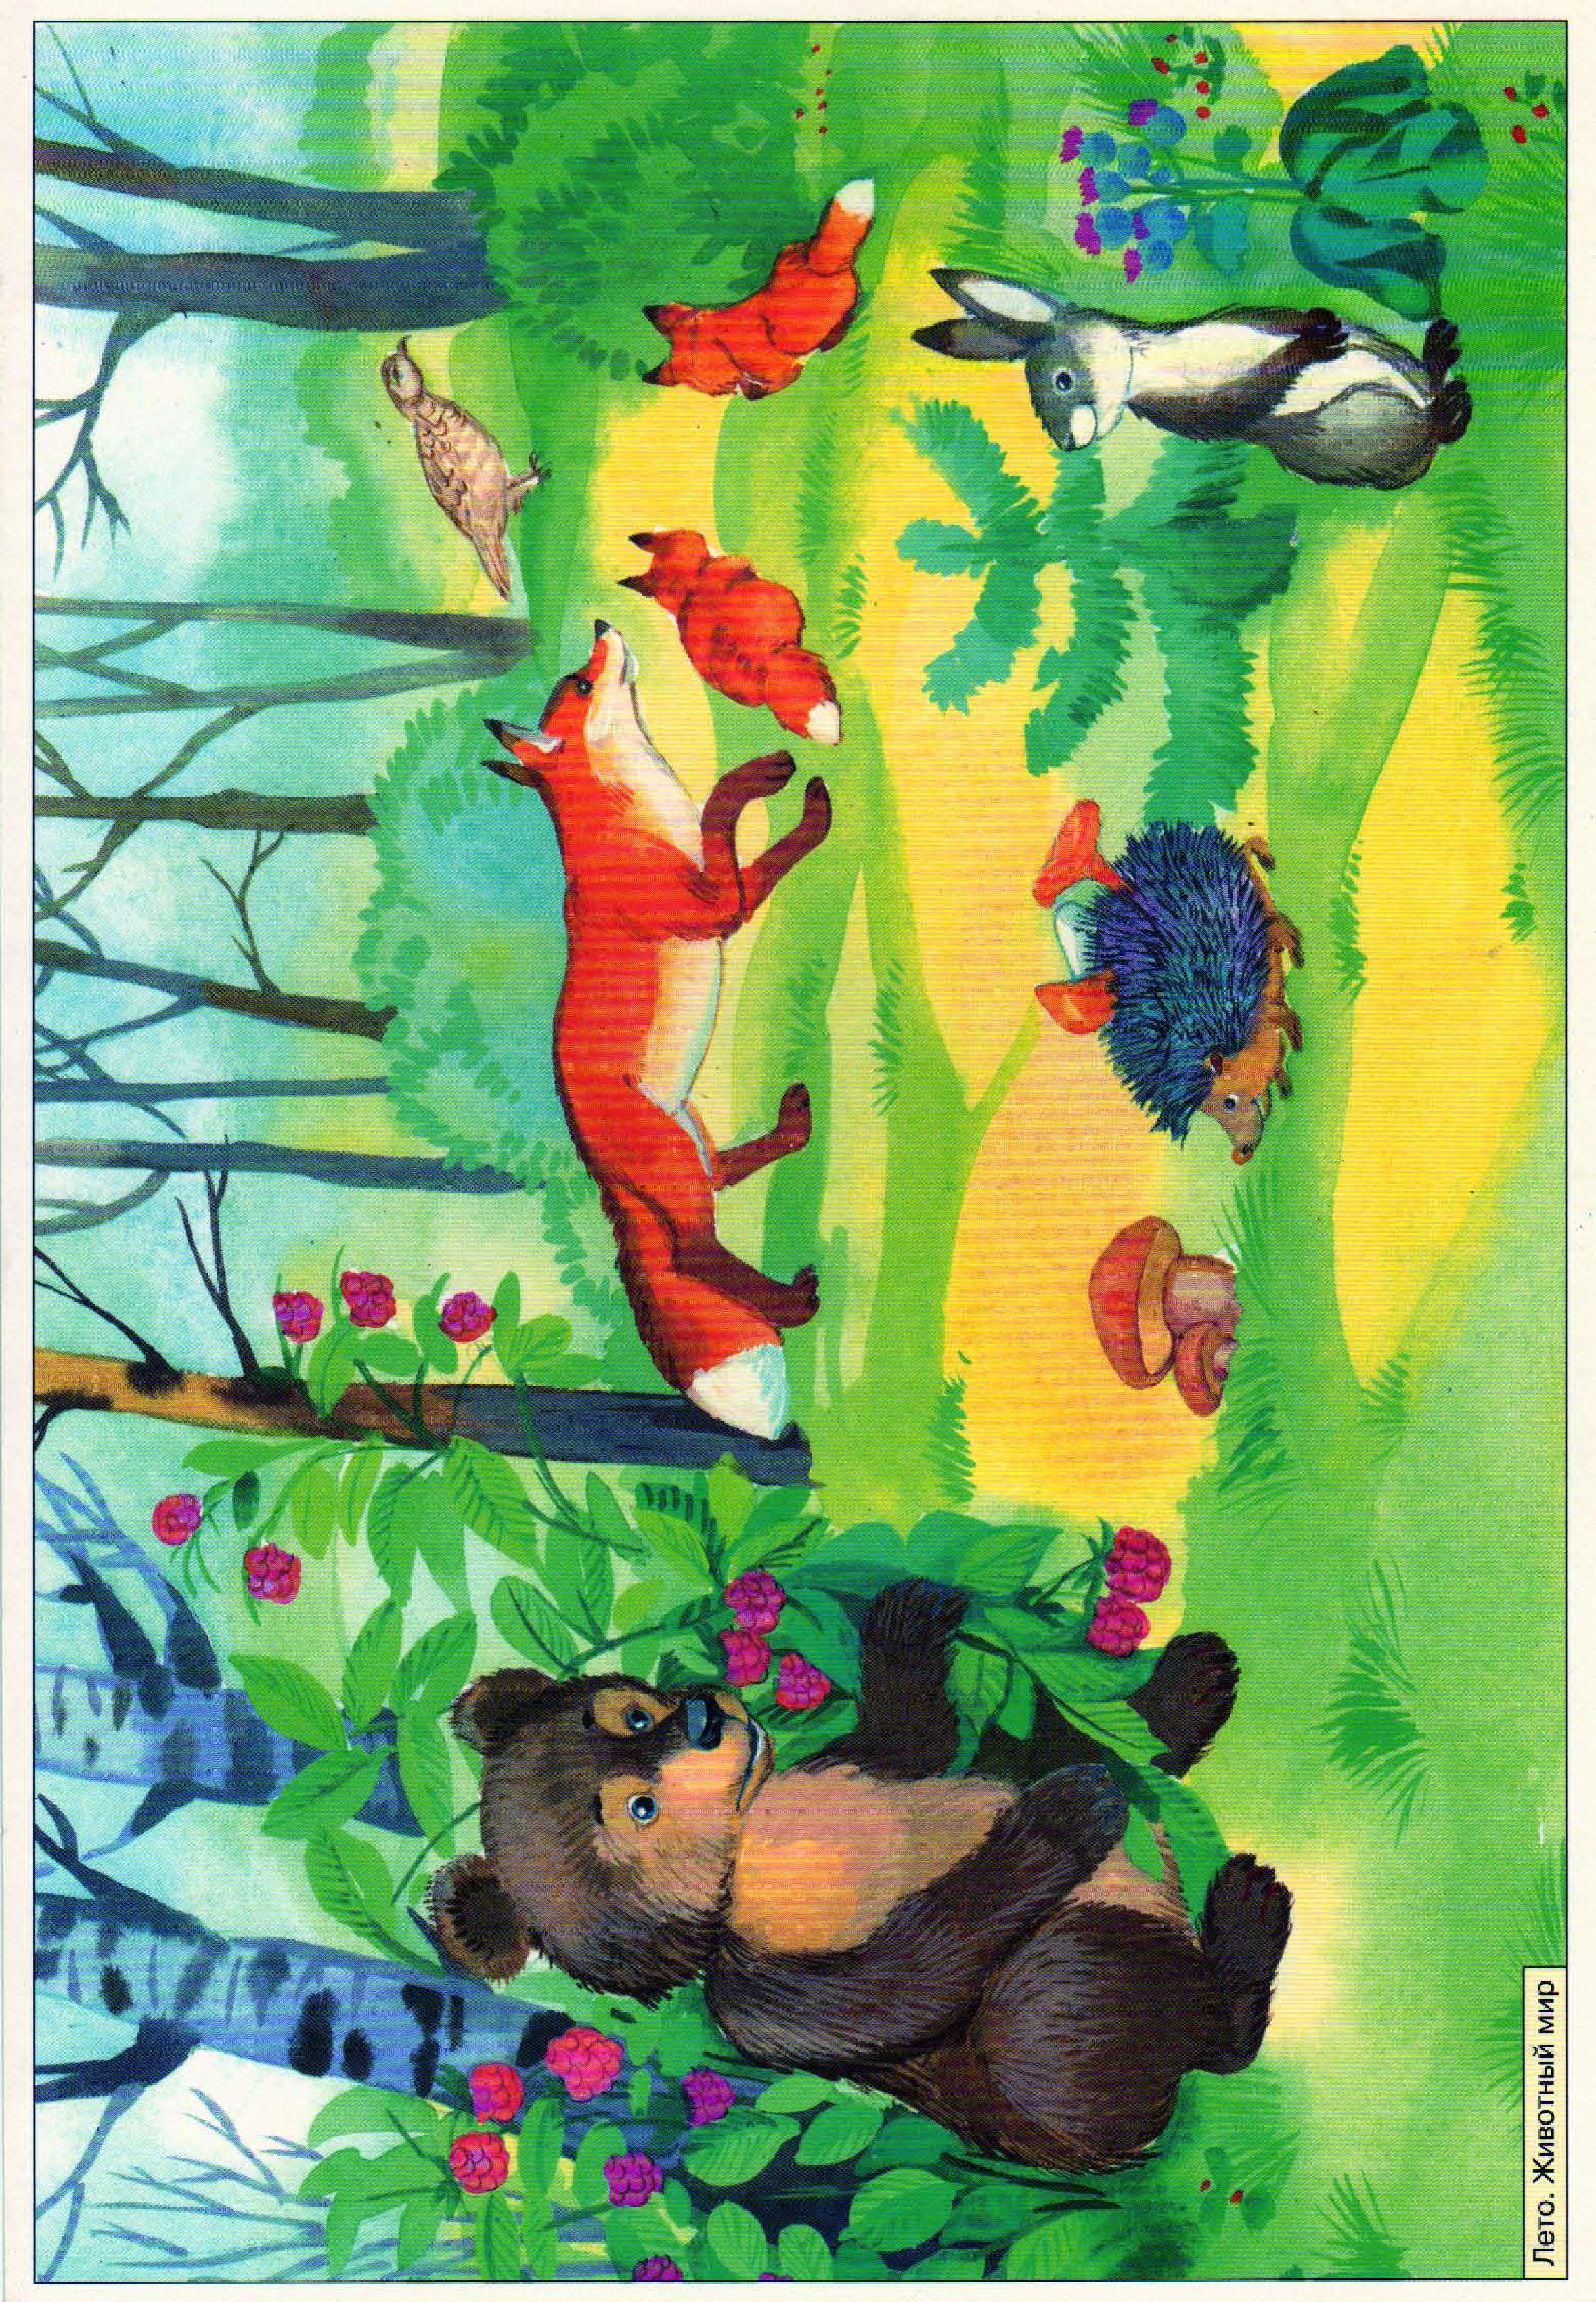 Лесные животные для детского сада